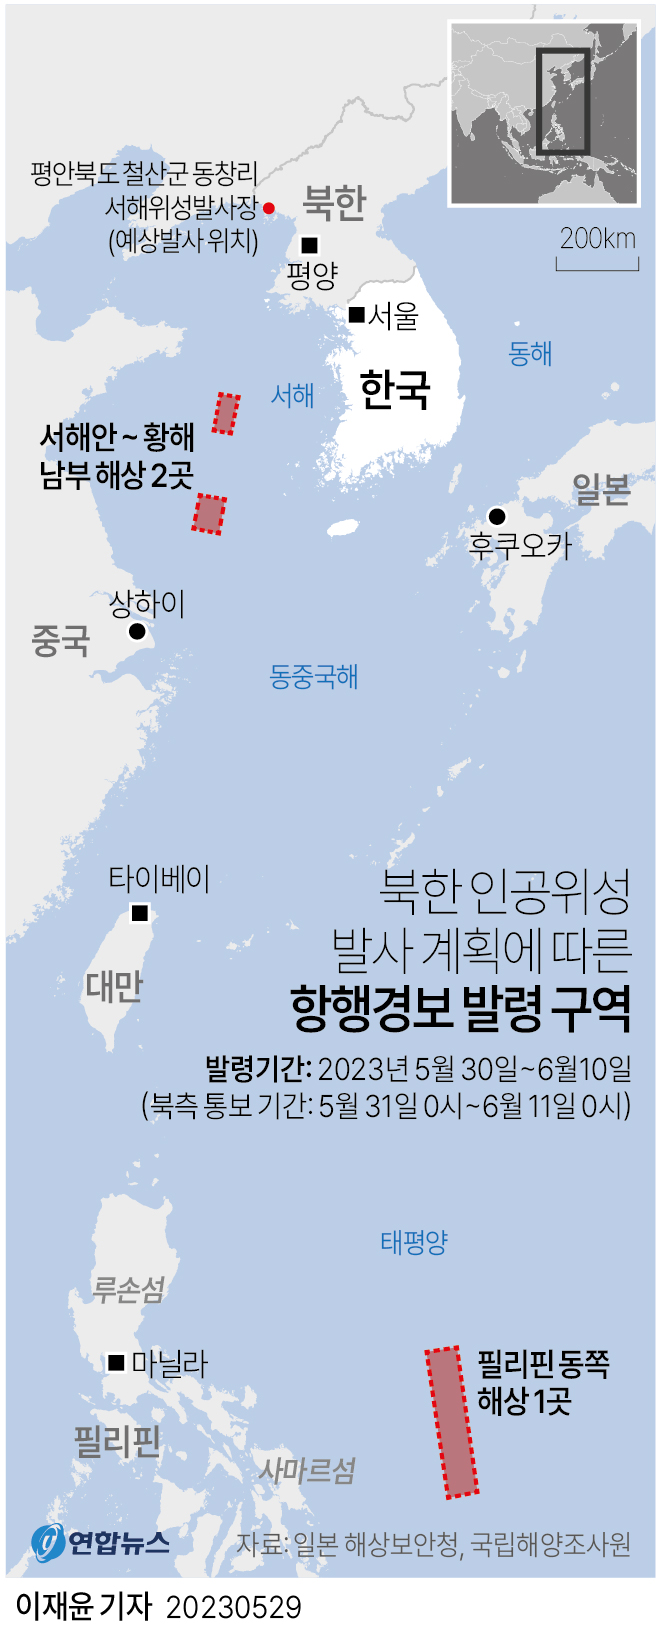  북한 인공위성 발사 계획에 따른 항행경보 발령 구역